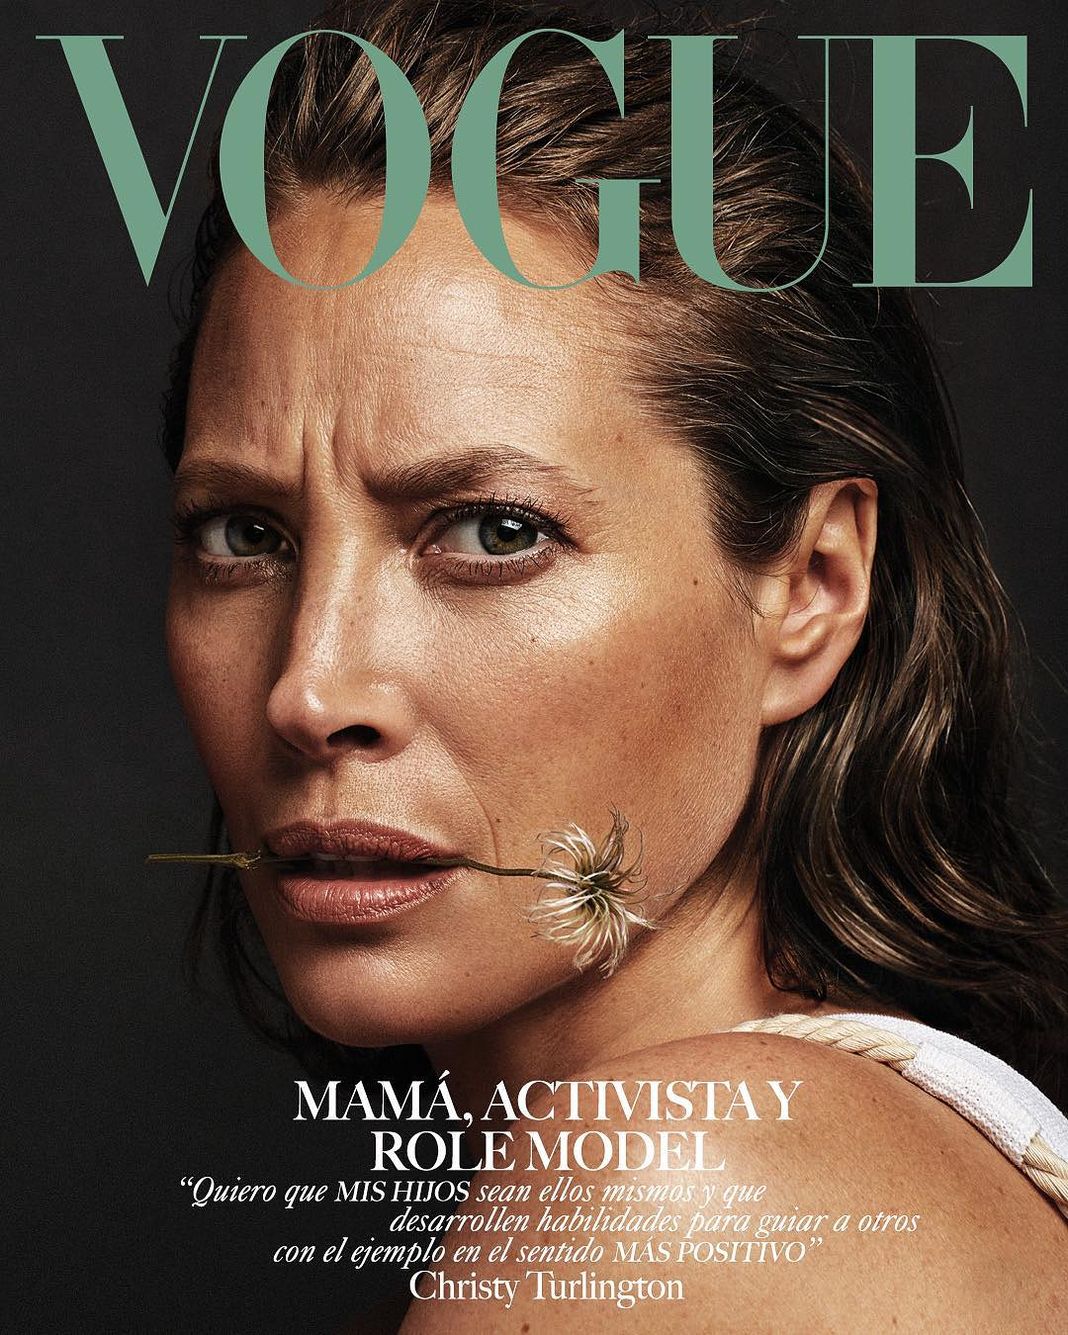 Кристи Терлингтон для Vogue México.